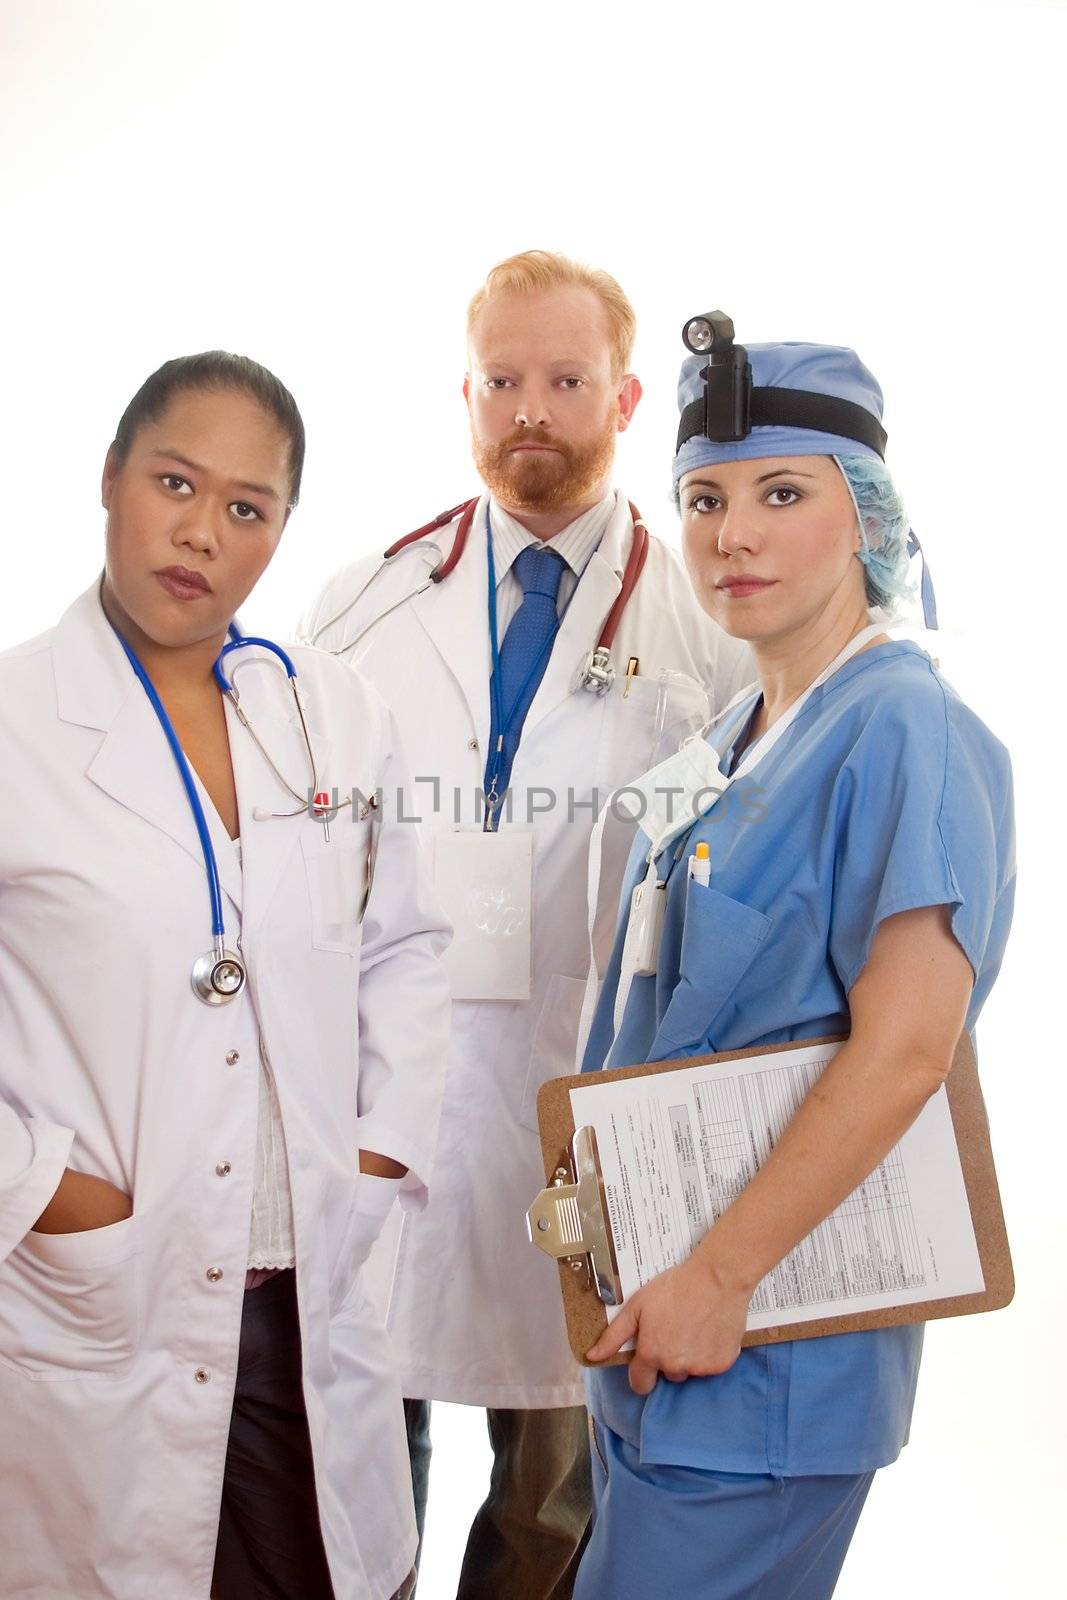 Three medical professionals 